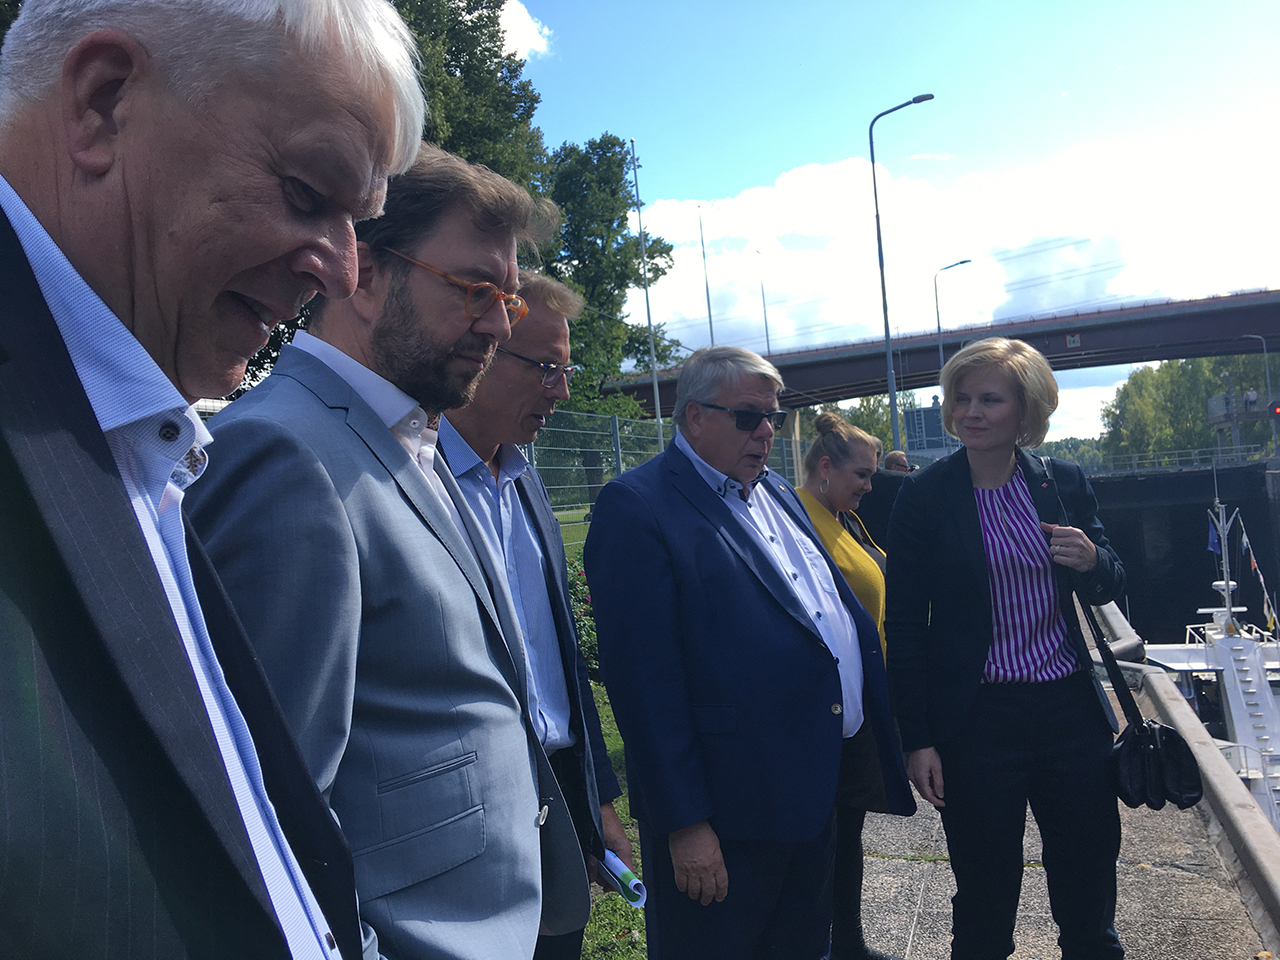 Kanavan vieressä seisovat Matti Viialainen, ministeri Timo Harakka, kansanedustaja Jukka Kopra, Antti Vehviläinen ja tuleva maakuntajohtaja Satu Sikanen.